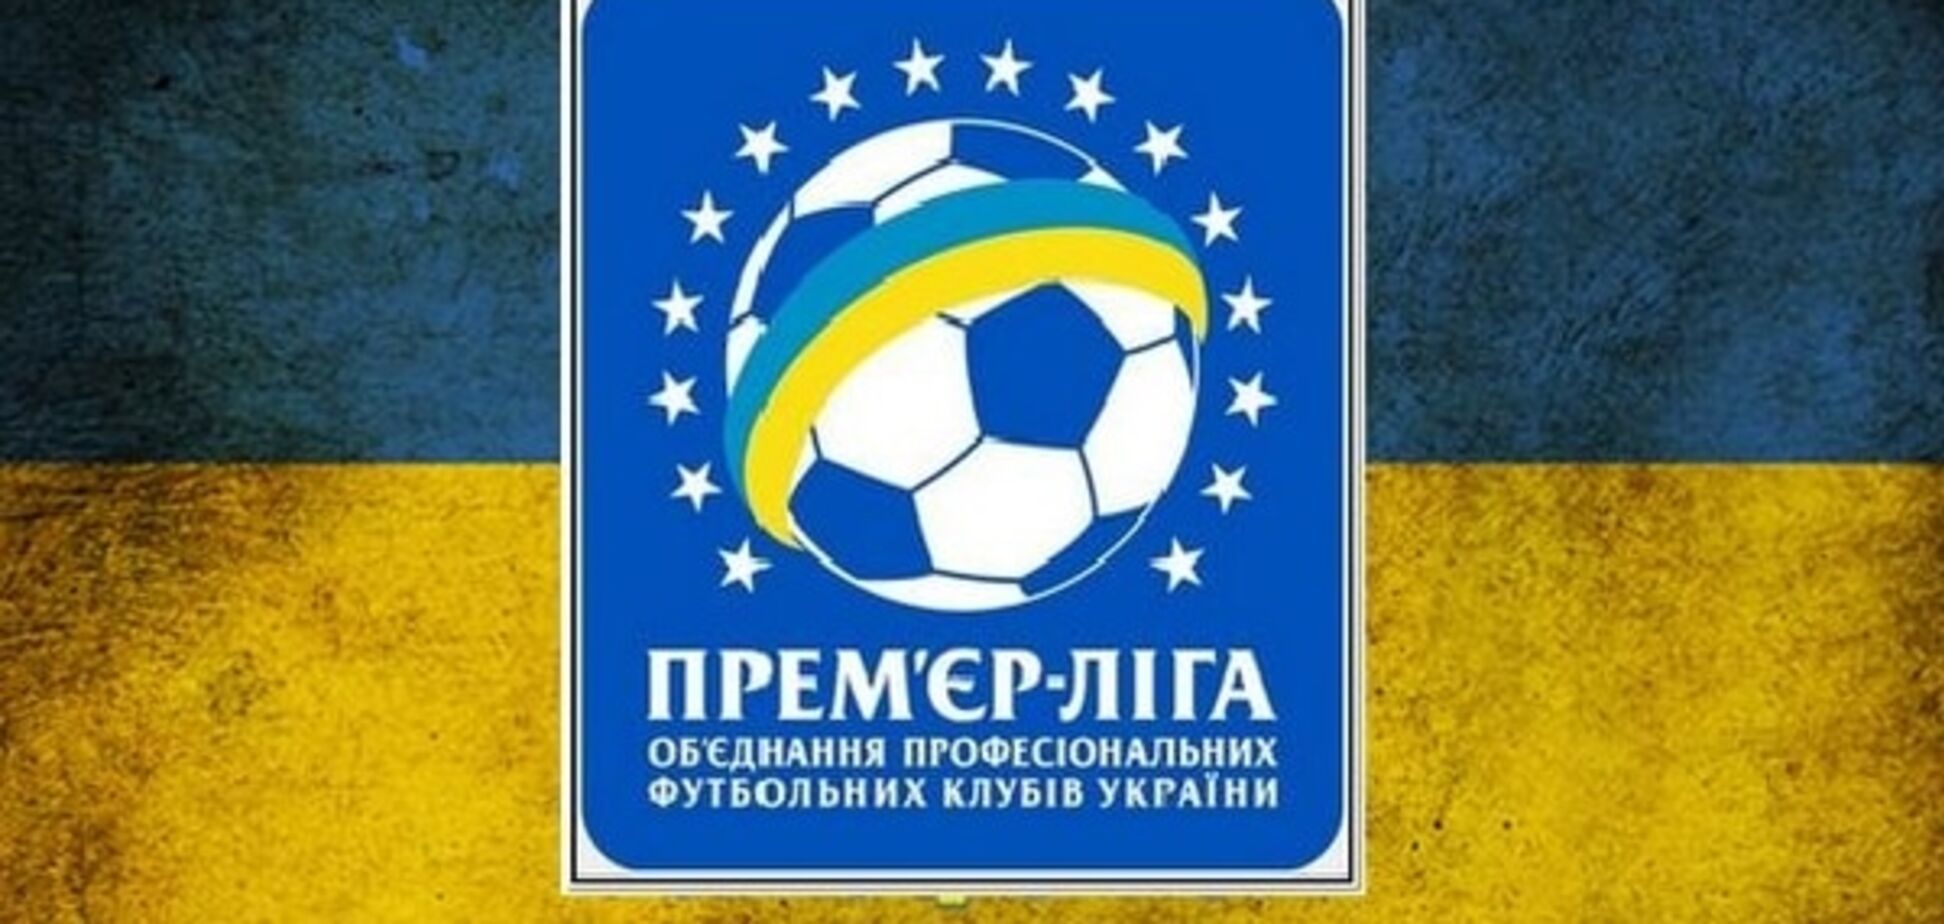 'Днепр' хотят исключить из чемпионата Украины